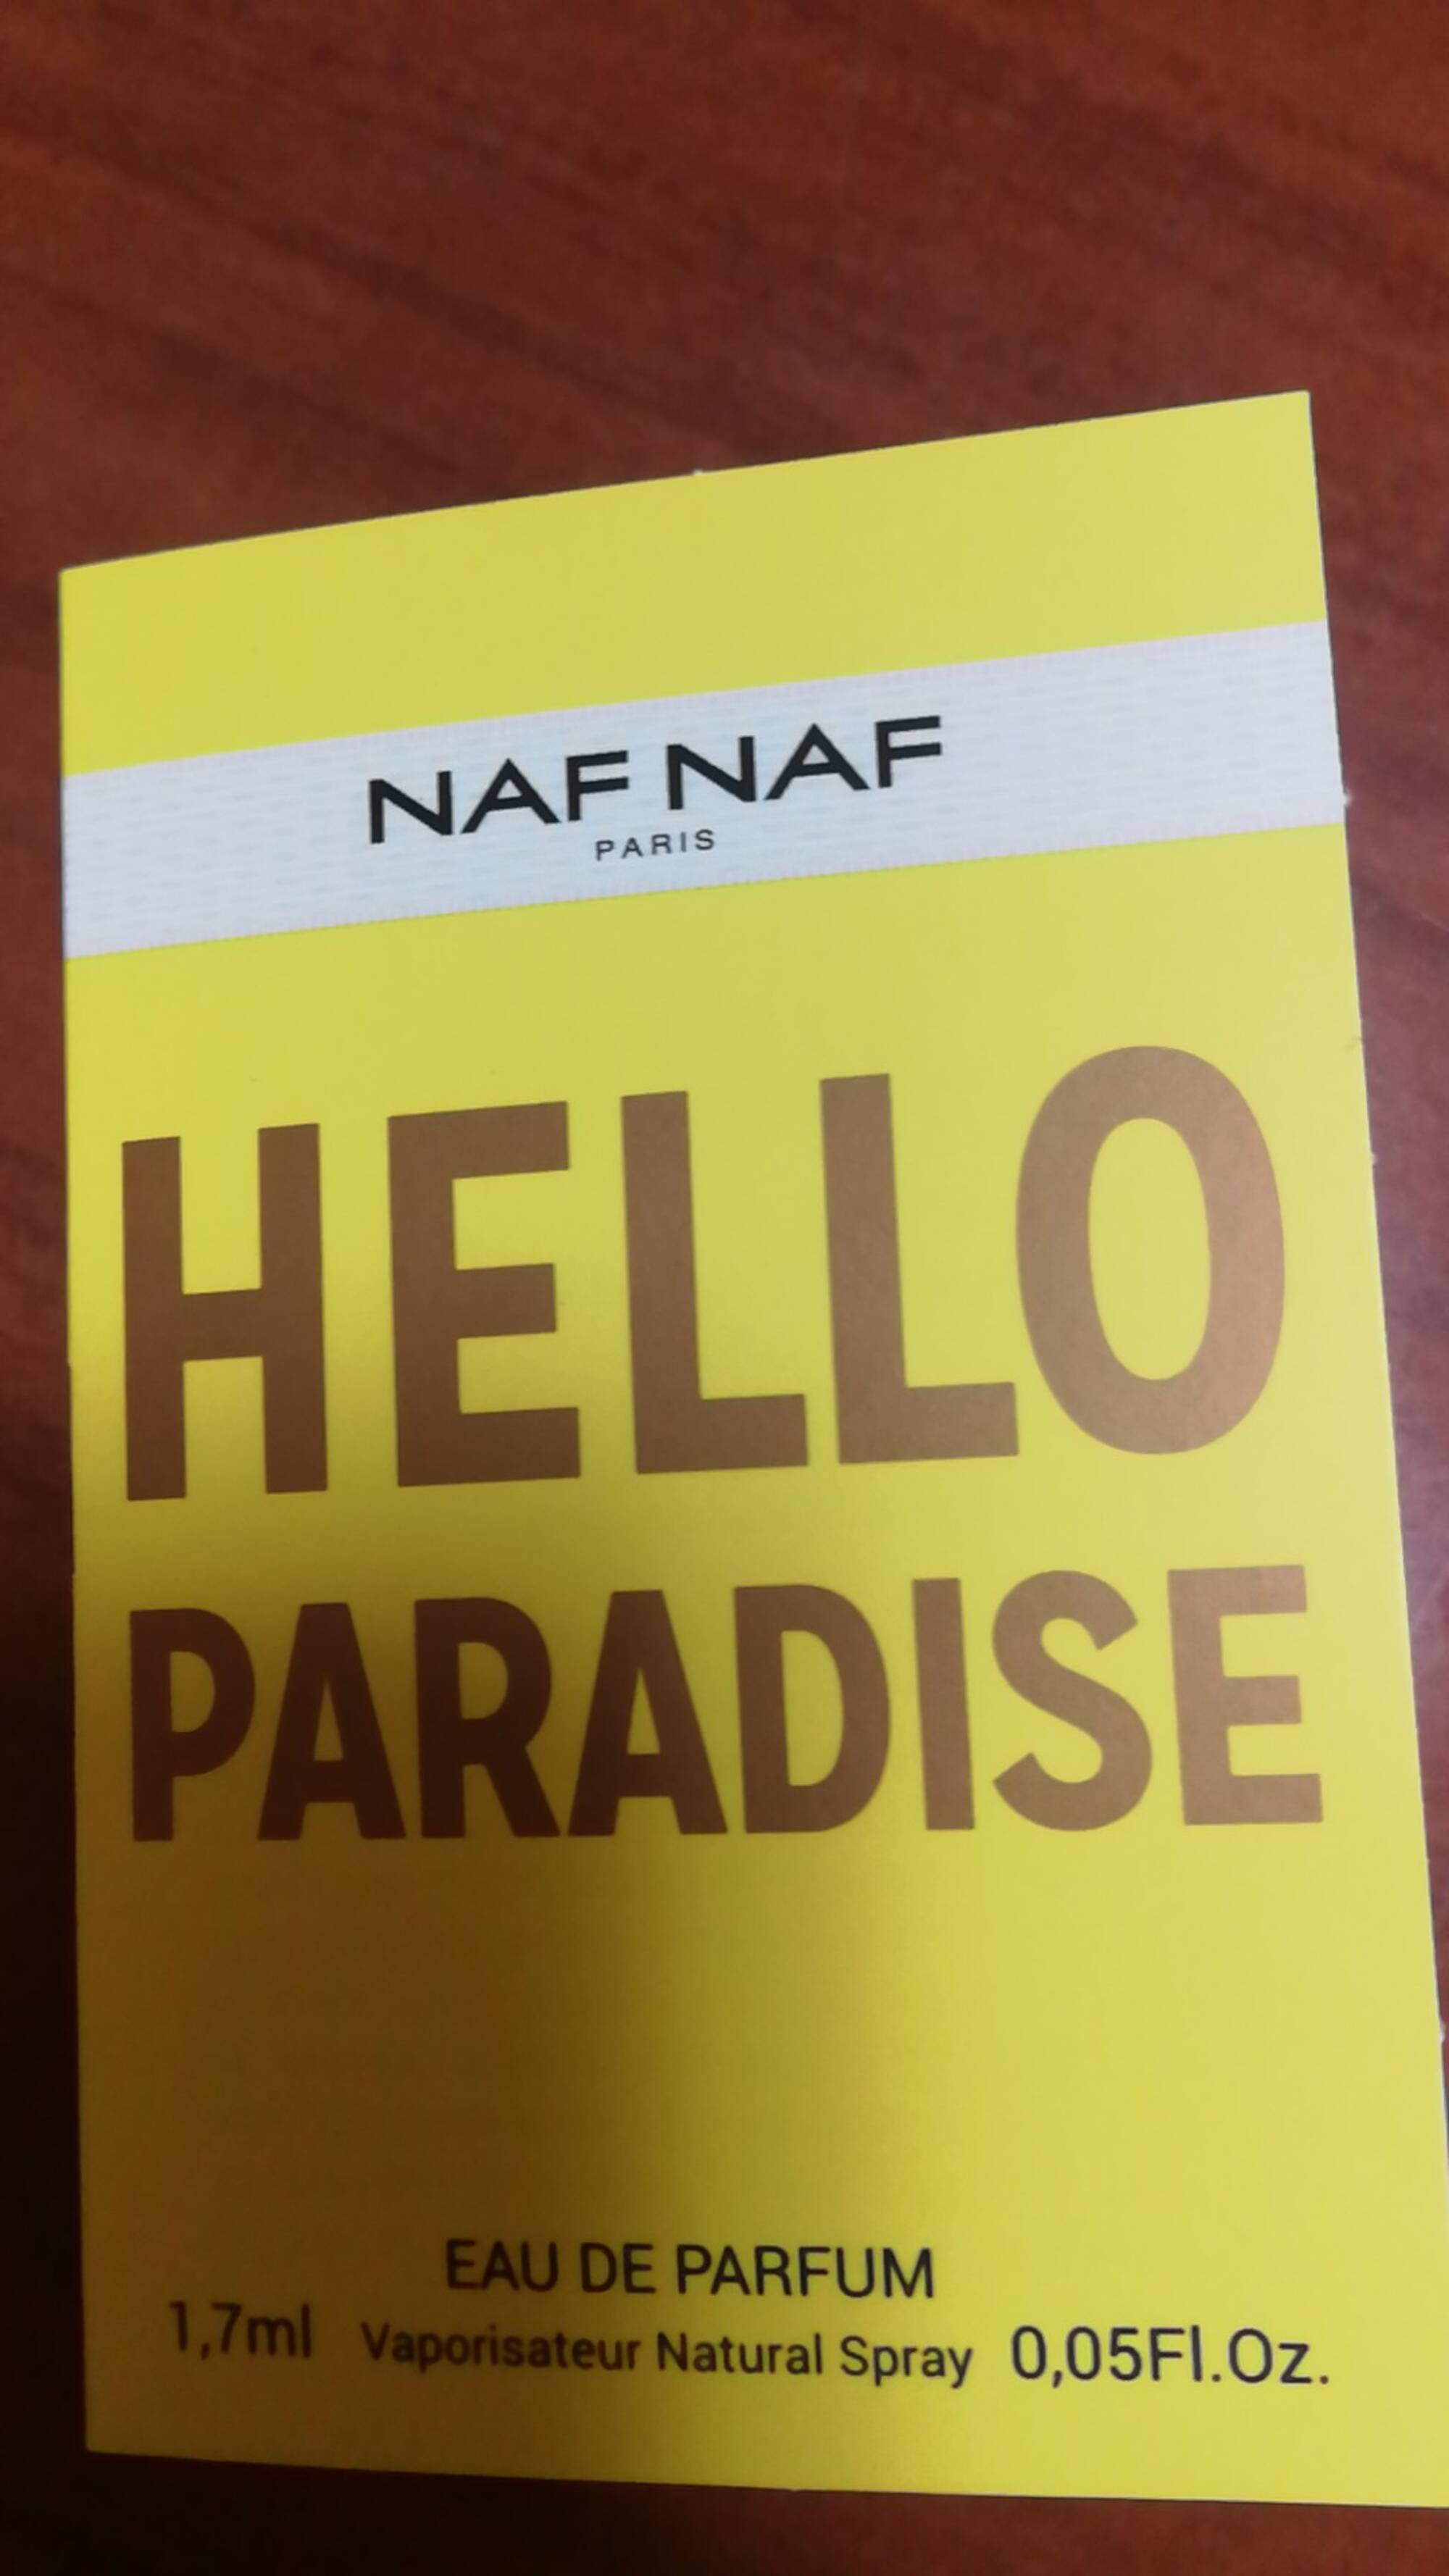 NAF NAF - Hello paradise - Eau de parfum